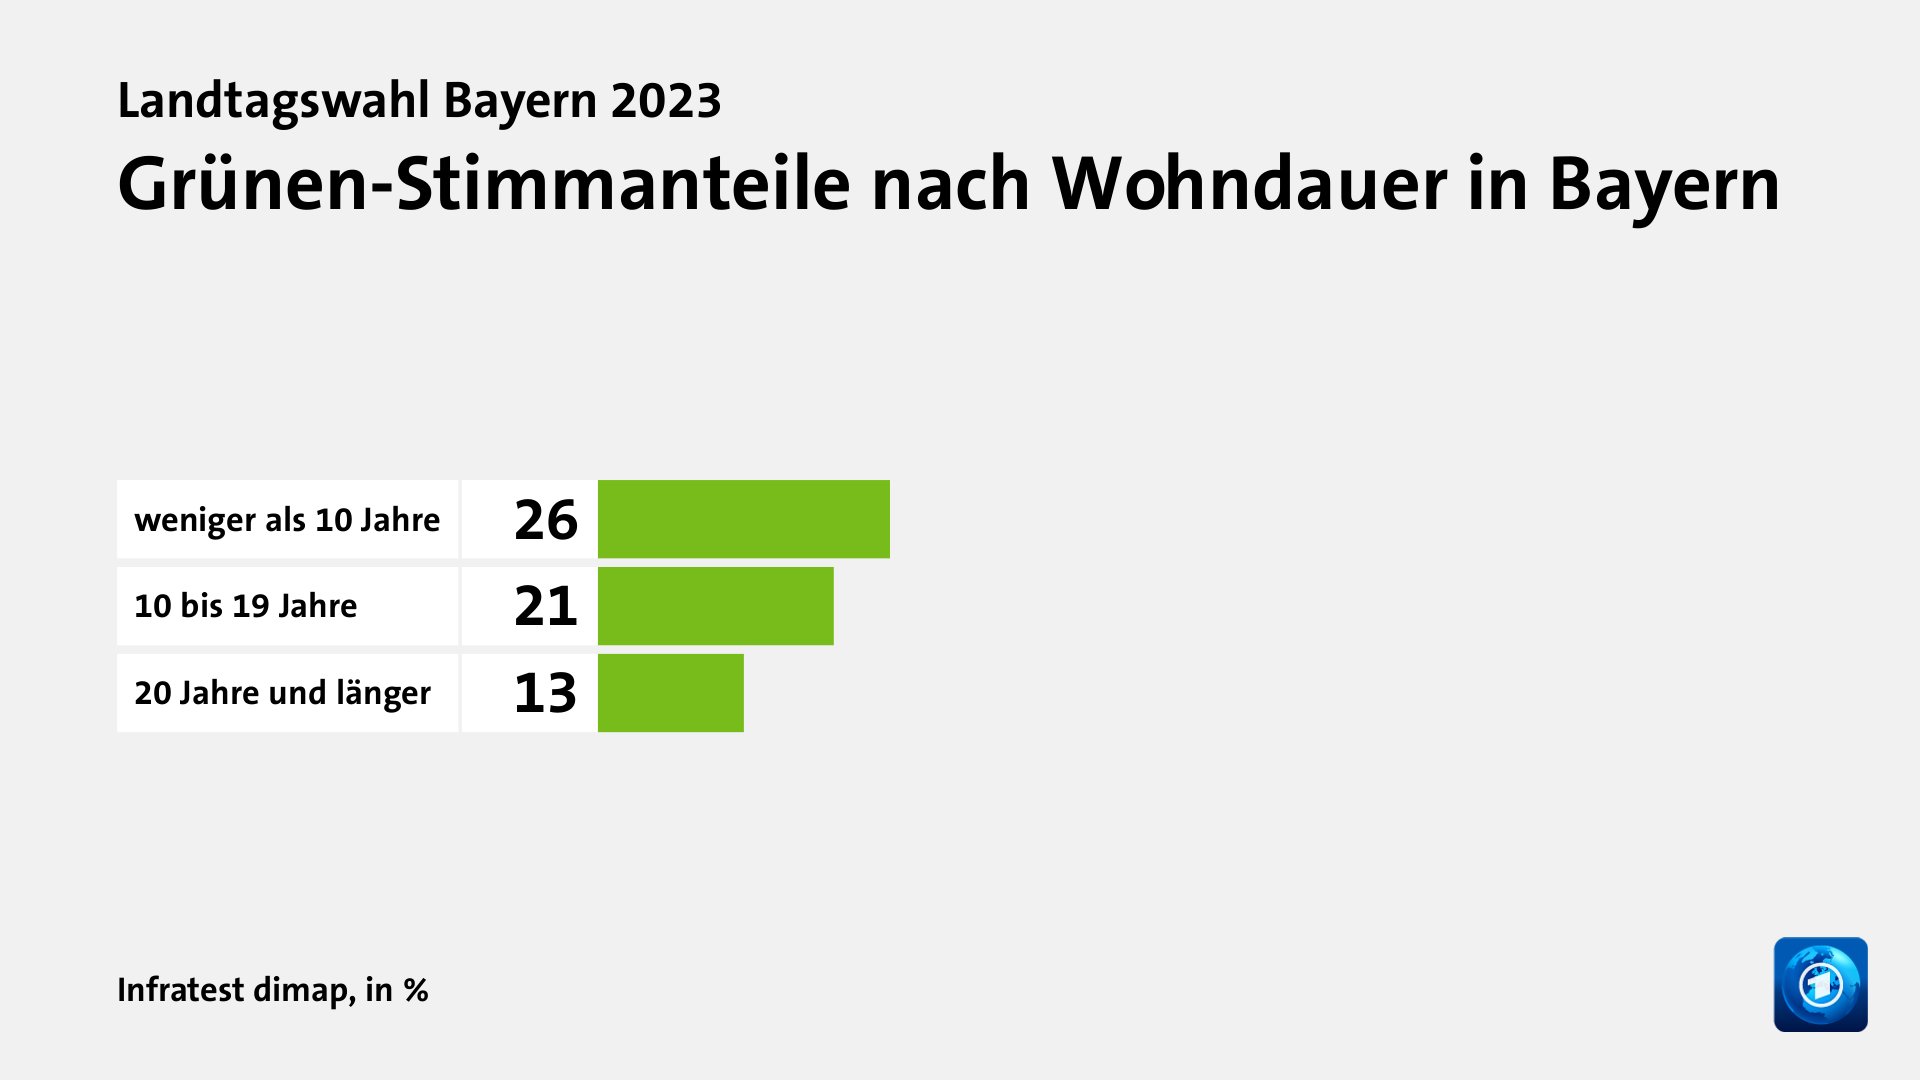 Grünen-Stimmanteile nach Wohndauer in Bayern, in %: weniger als 10 Jahre 26, 10 bis 19 Jahre 21, 20 Jahre und länger 13, Quelle: Infratest dimap